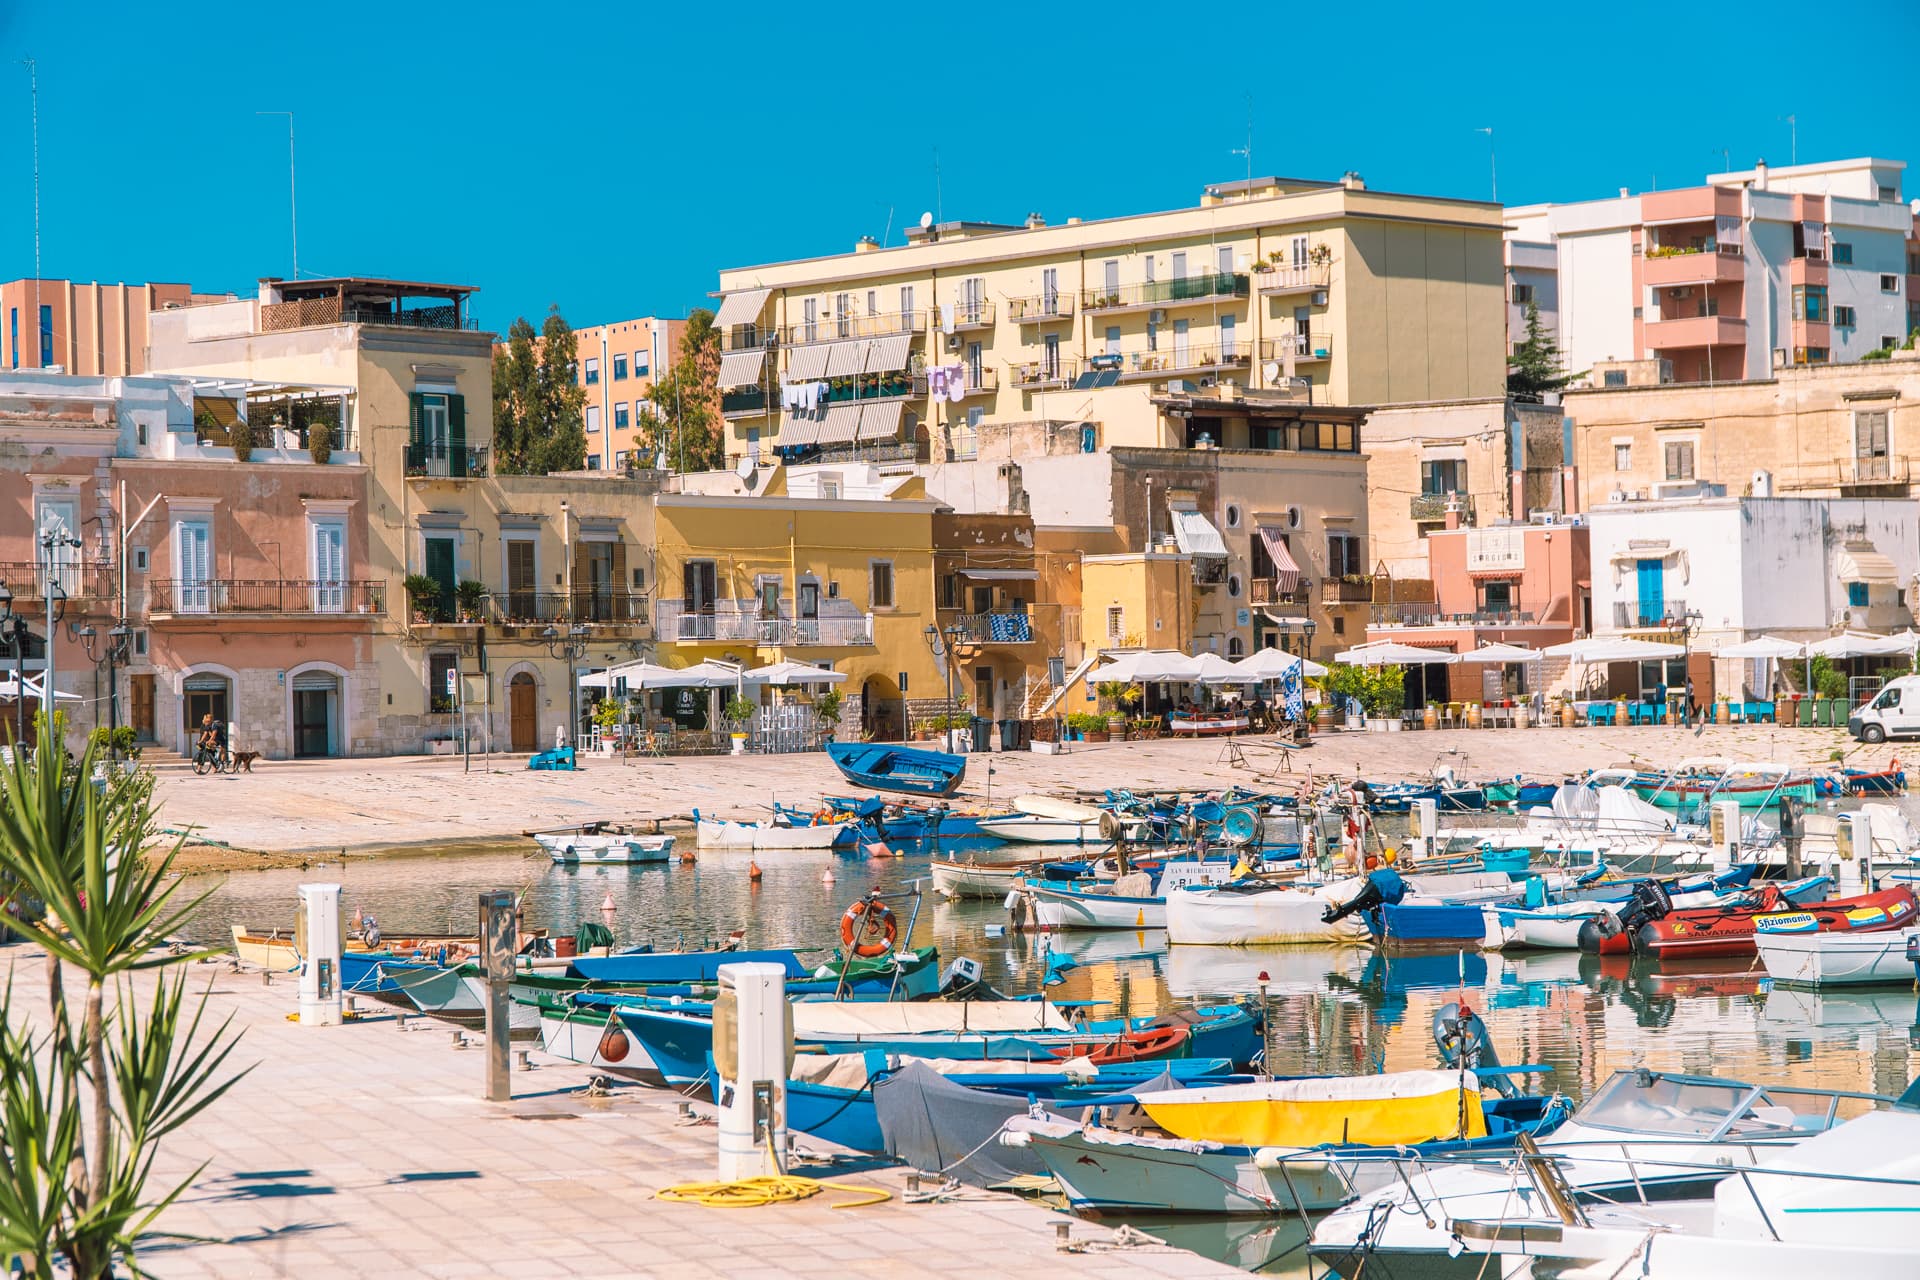 Kolorowy port w Bisceglie | Plan wyjazdu do Apulii